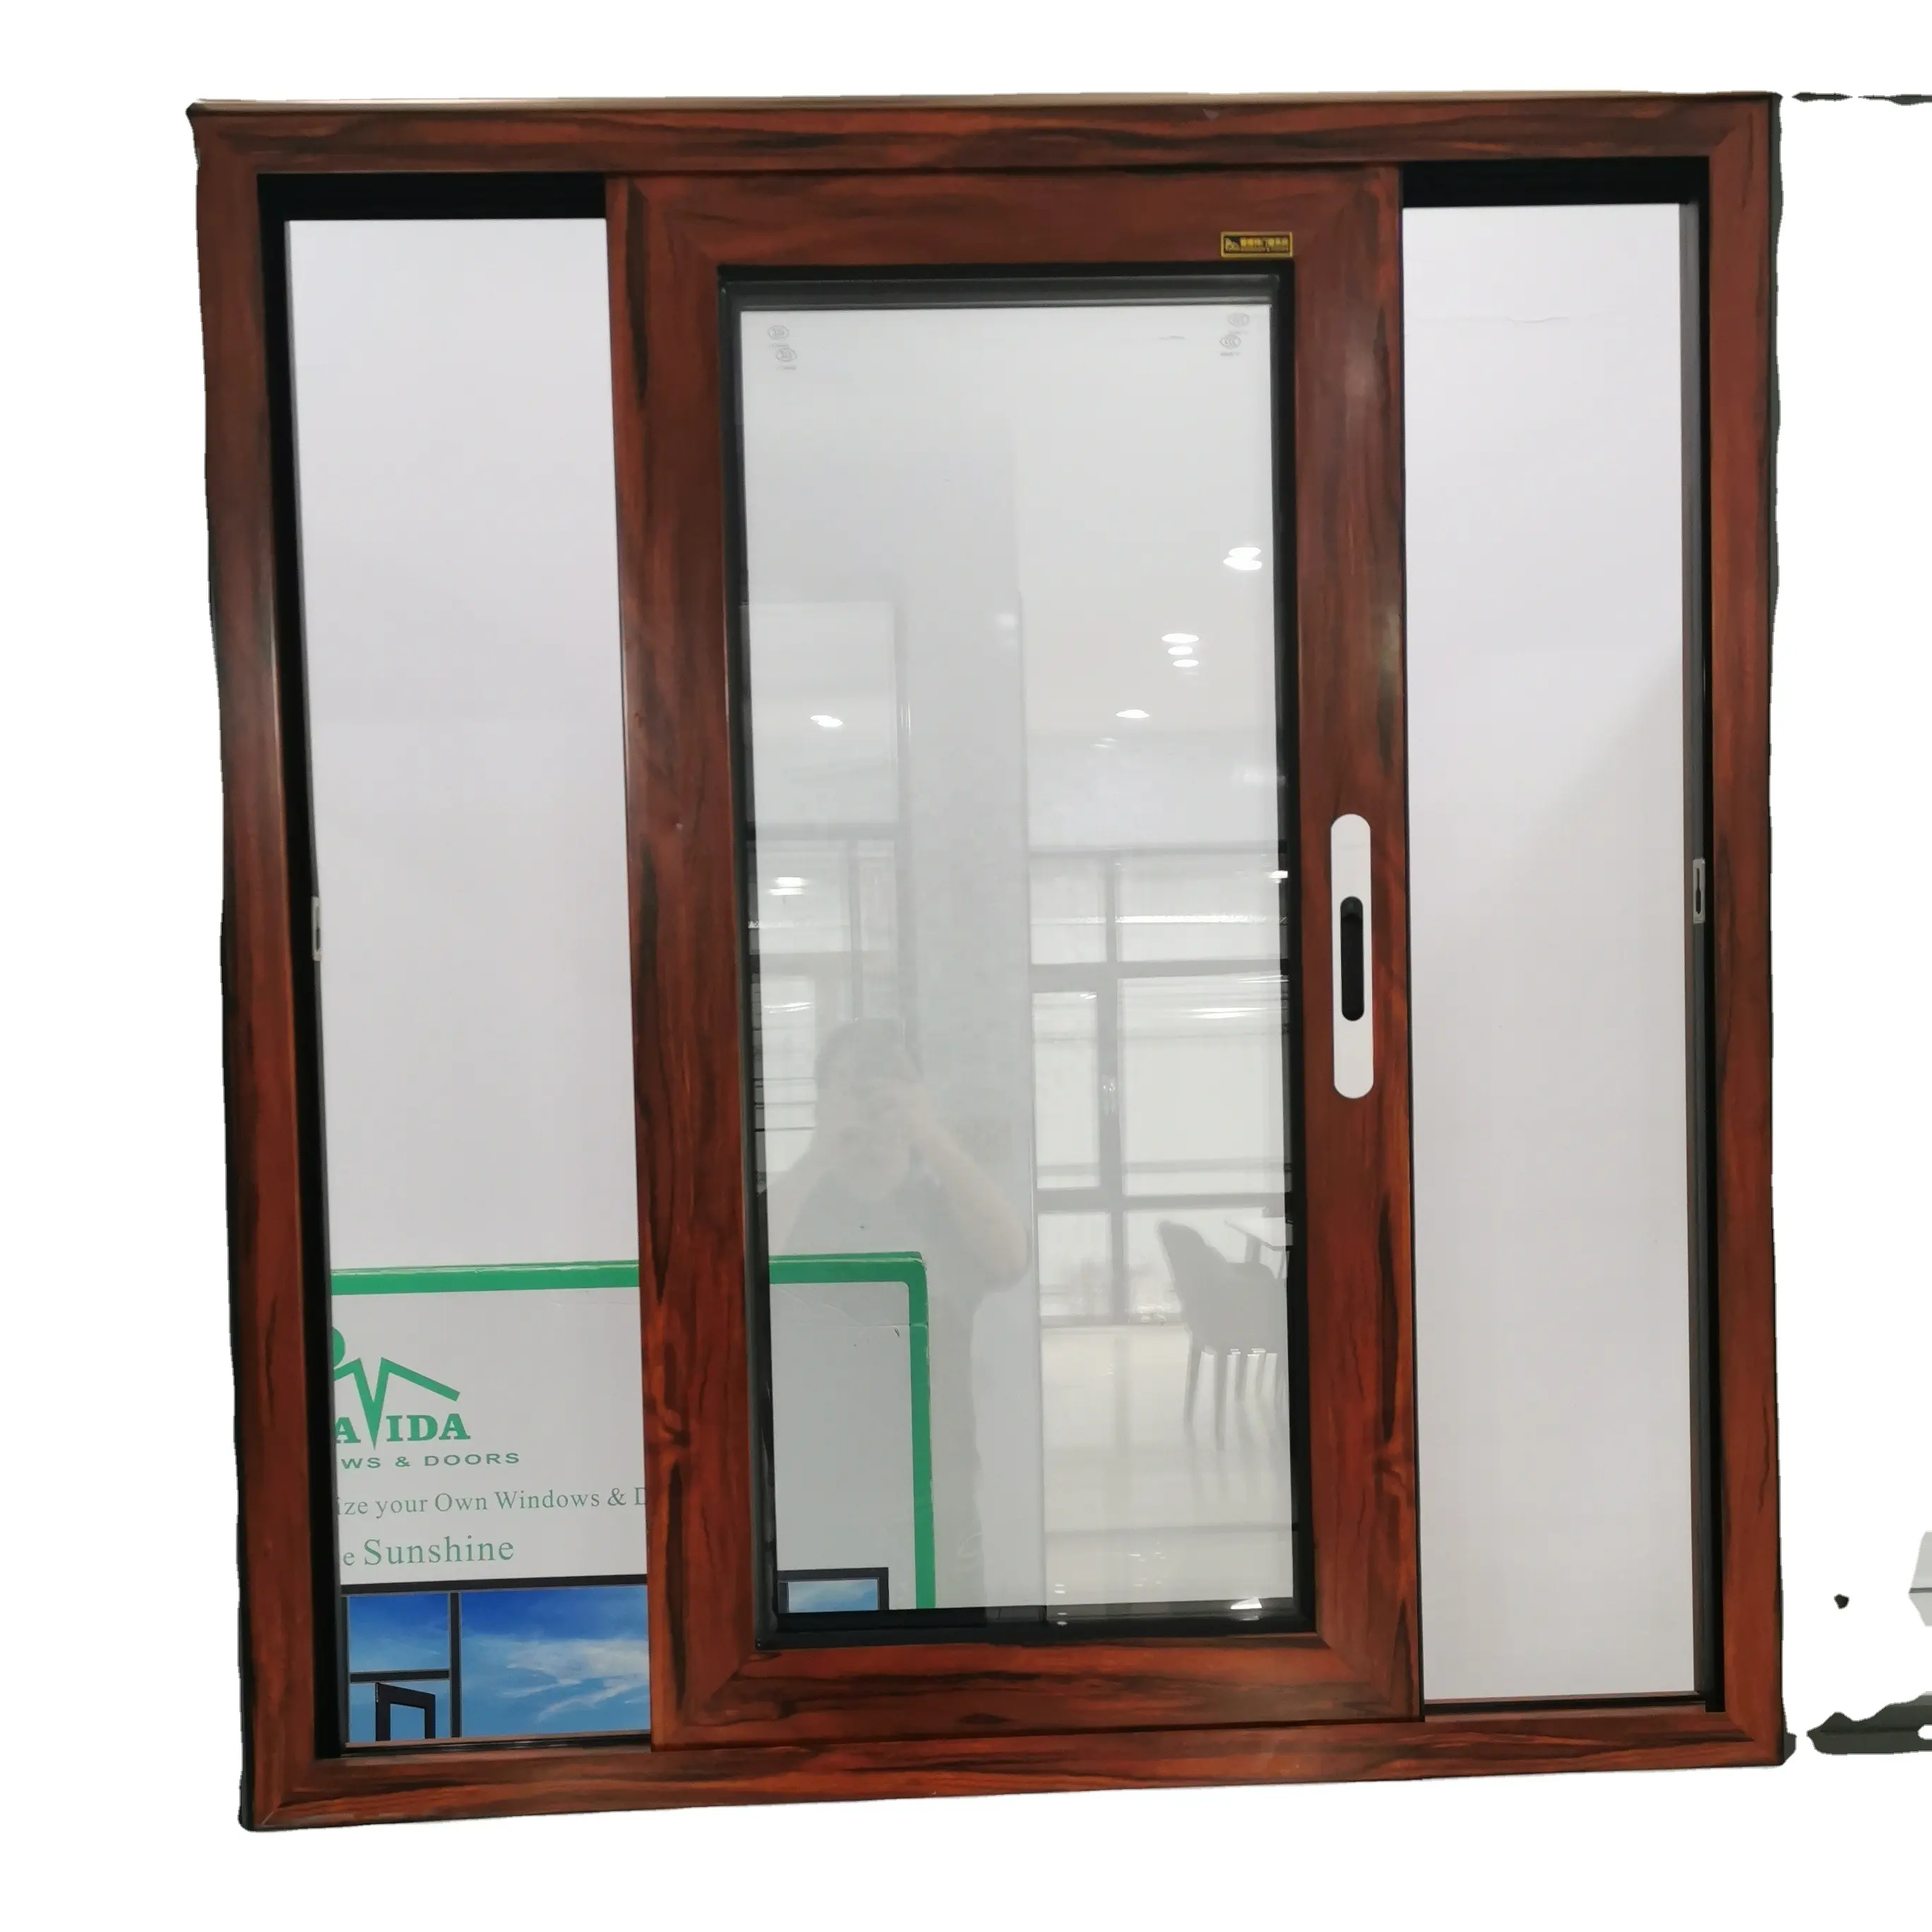 Hợp kim nhôm khung cửa sổ kính với giá rẻ thiết kế mới nhất nhôm trượt nhà cửa nhôm và cửa sổ